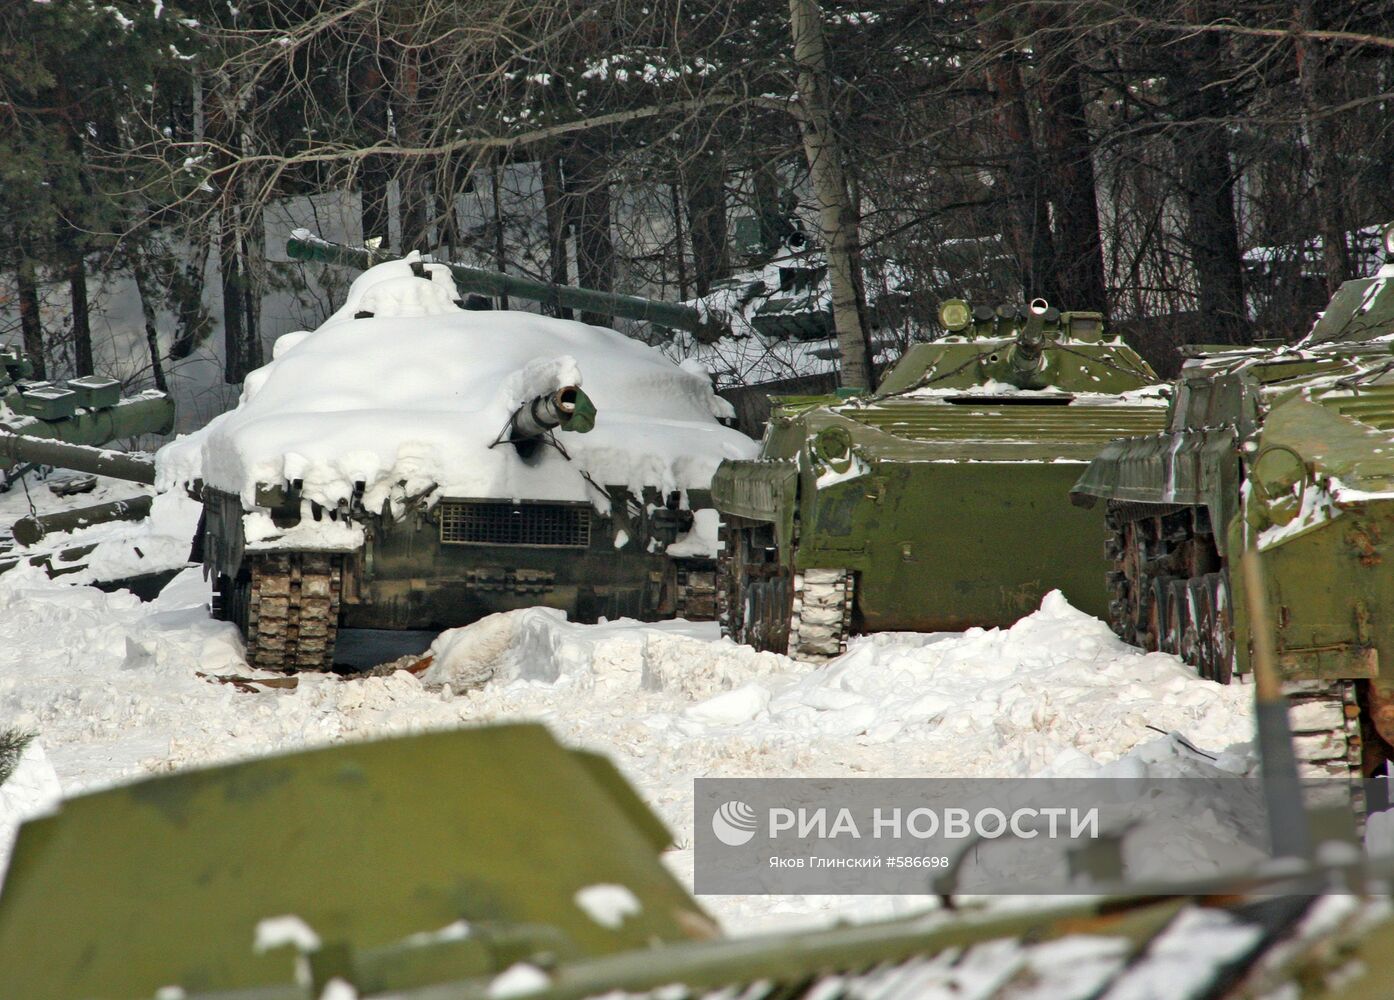 Не охраняемые танки обнаружены в лесу Свердловской области